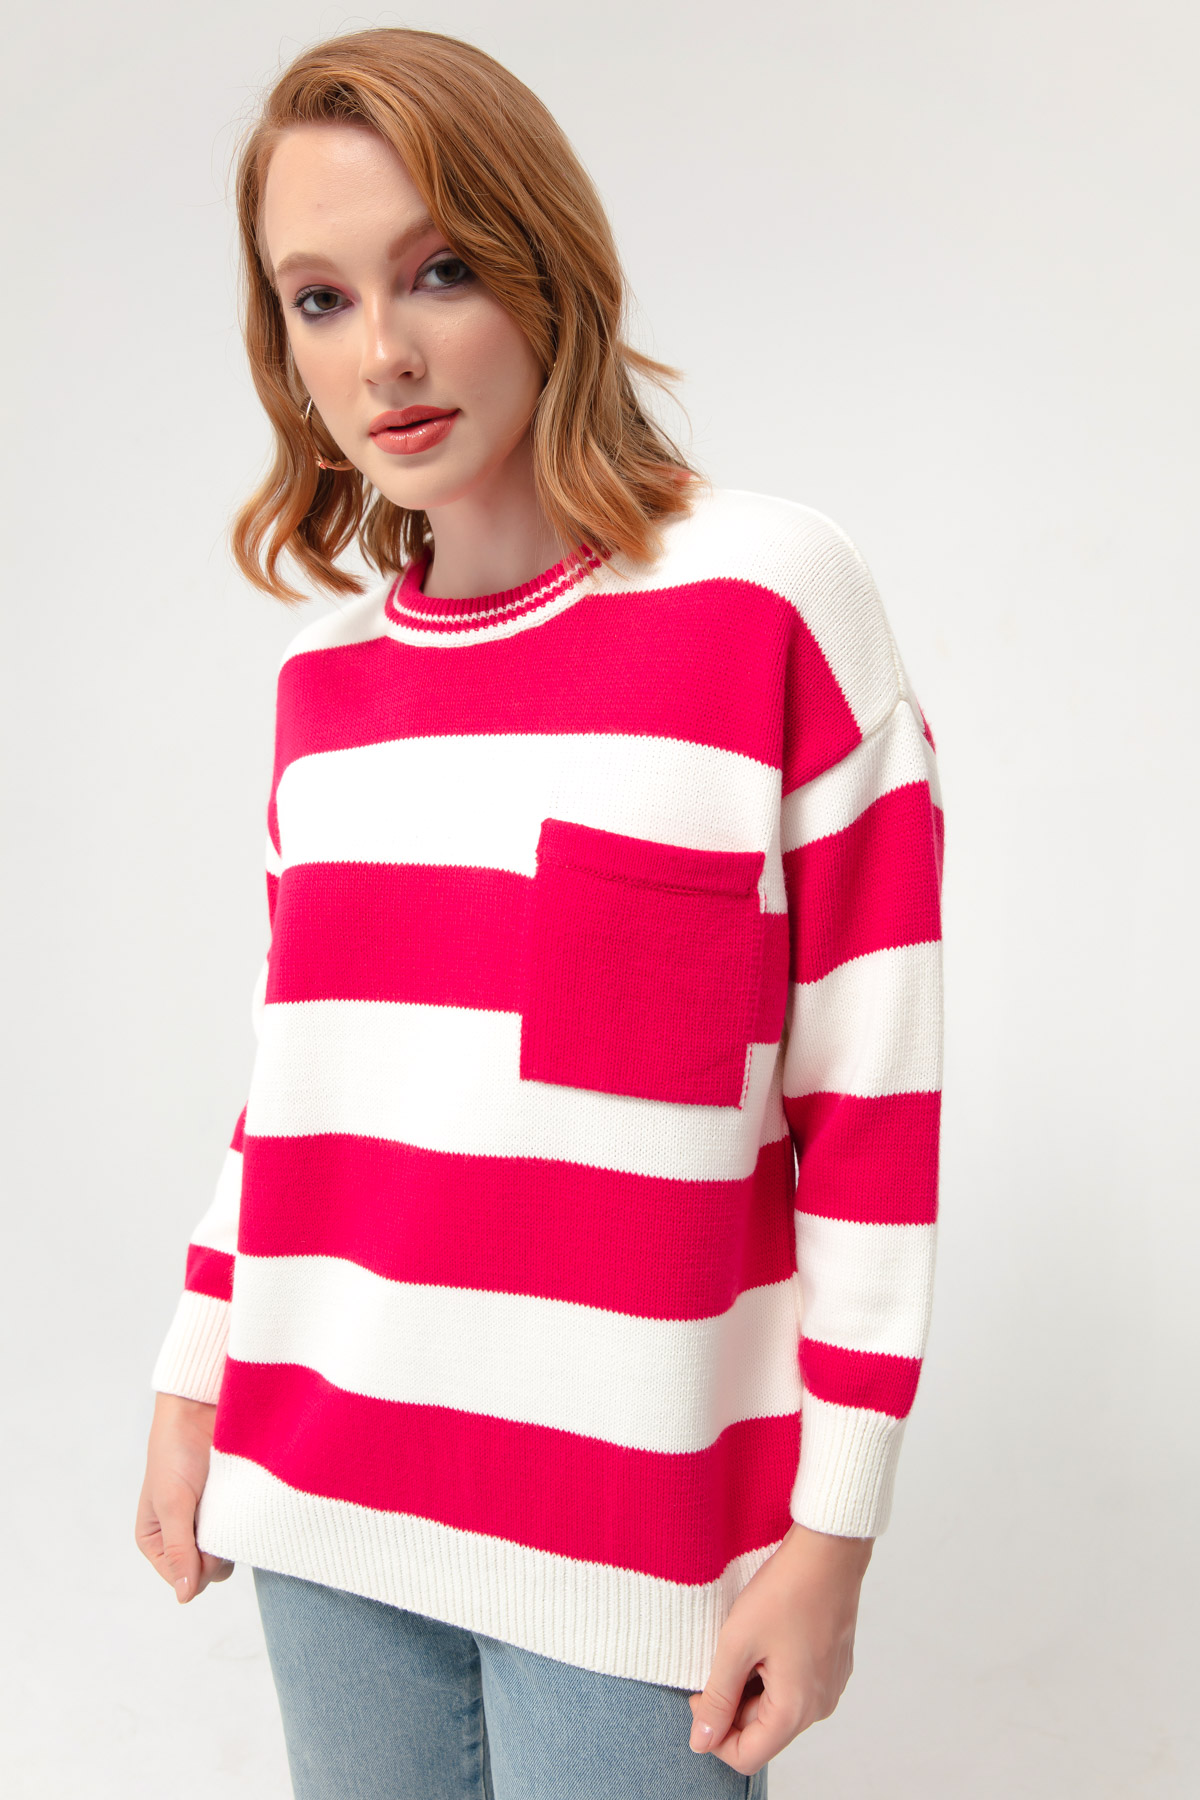 Women's Fuchsia Striped Knitwear Sweater